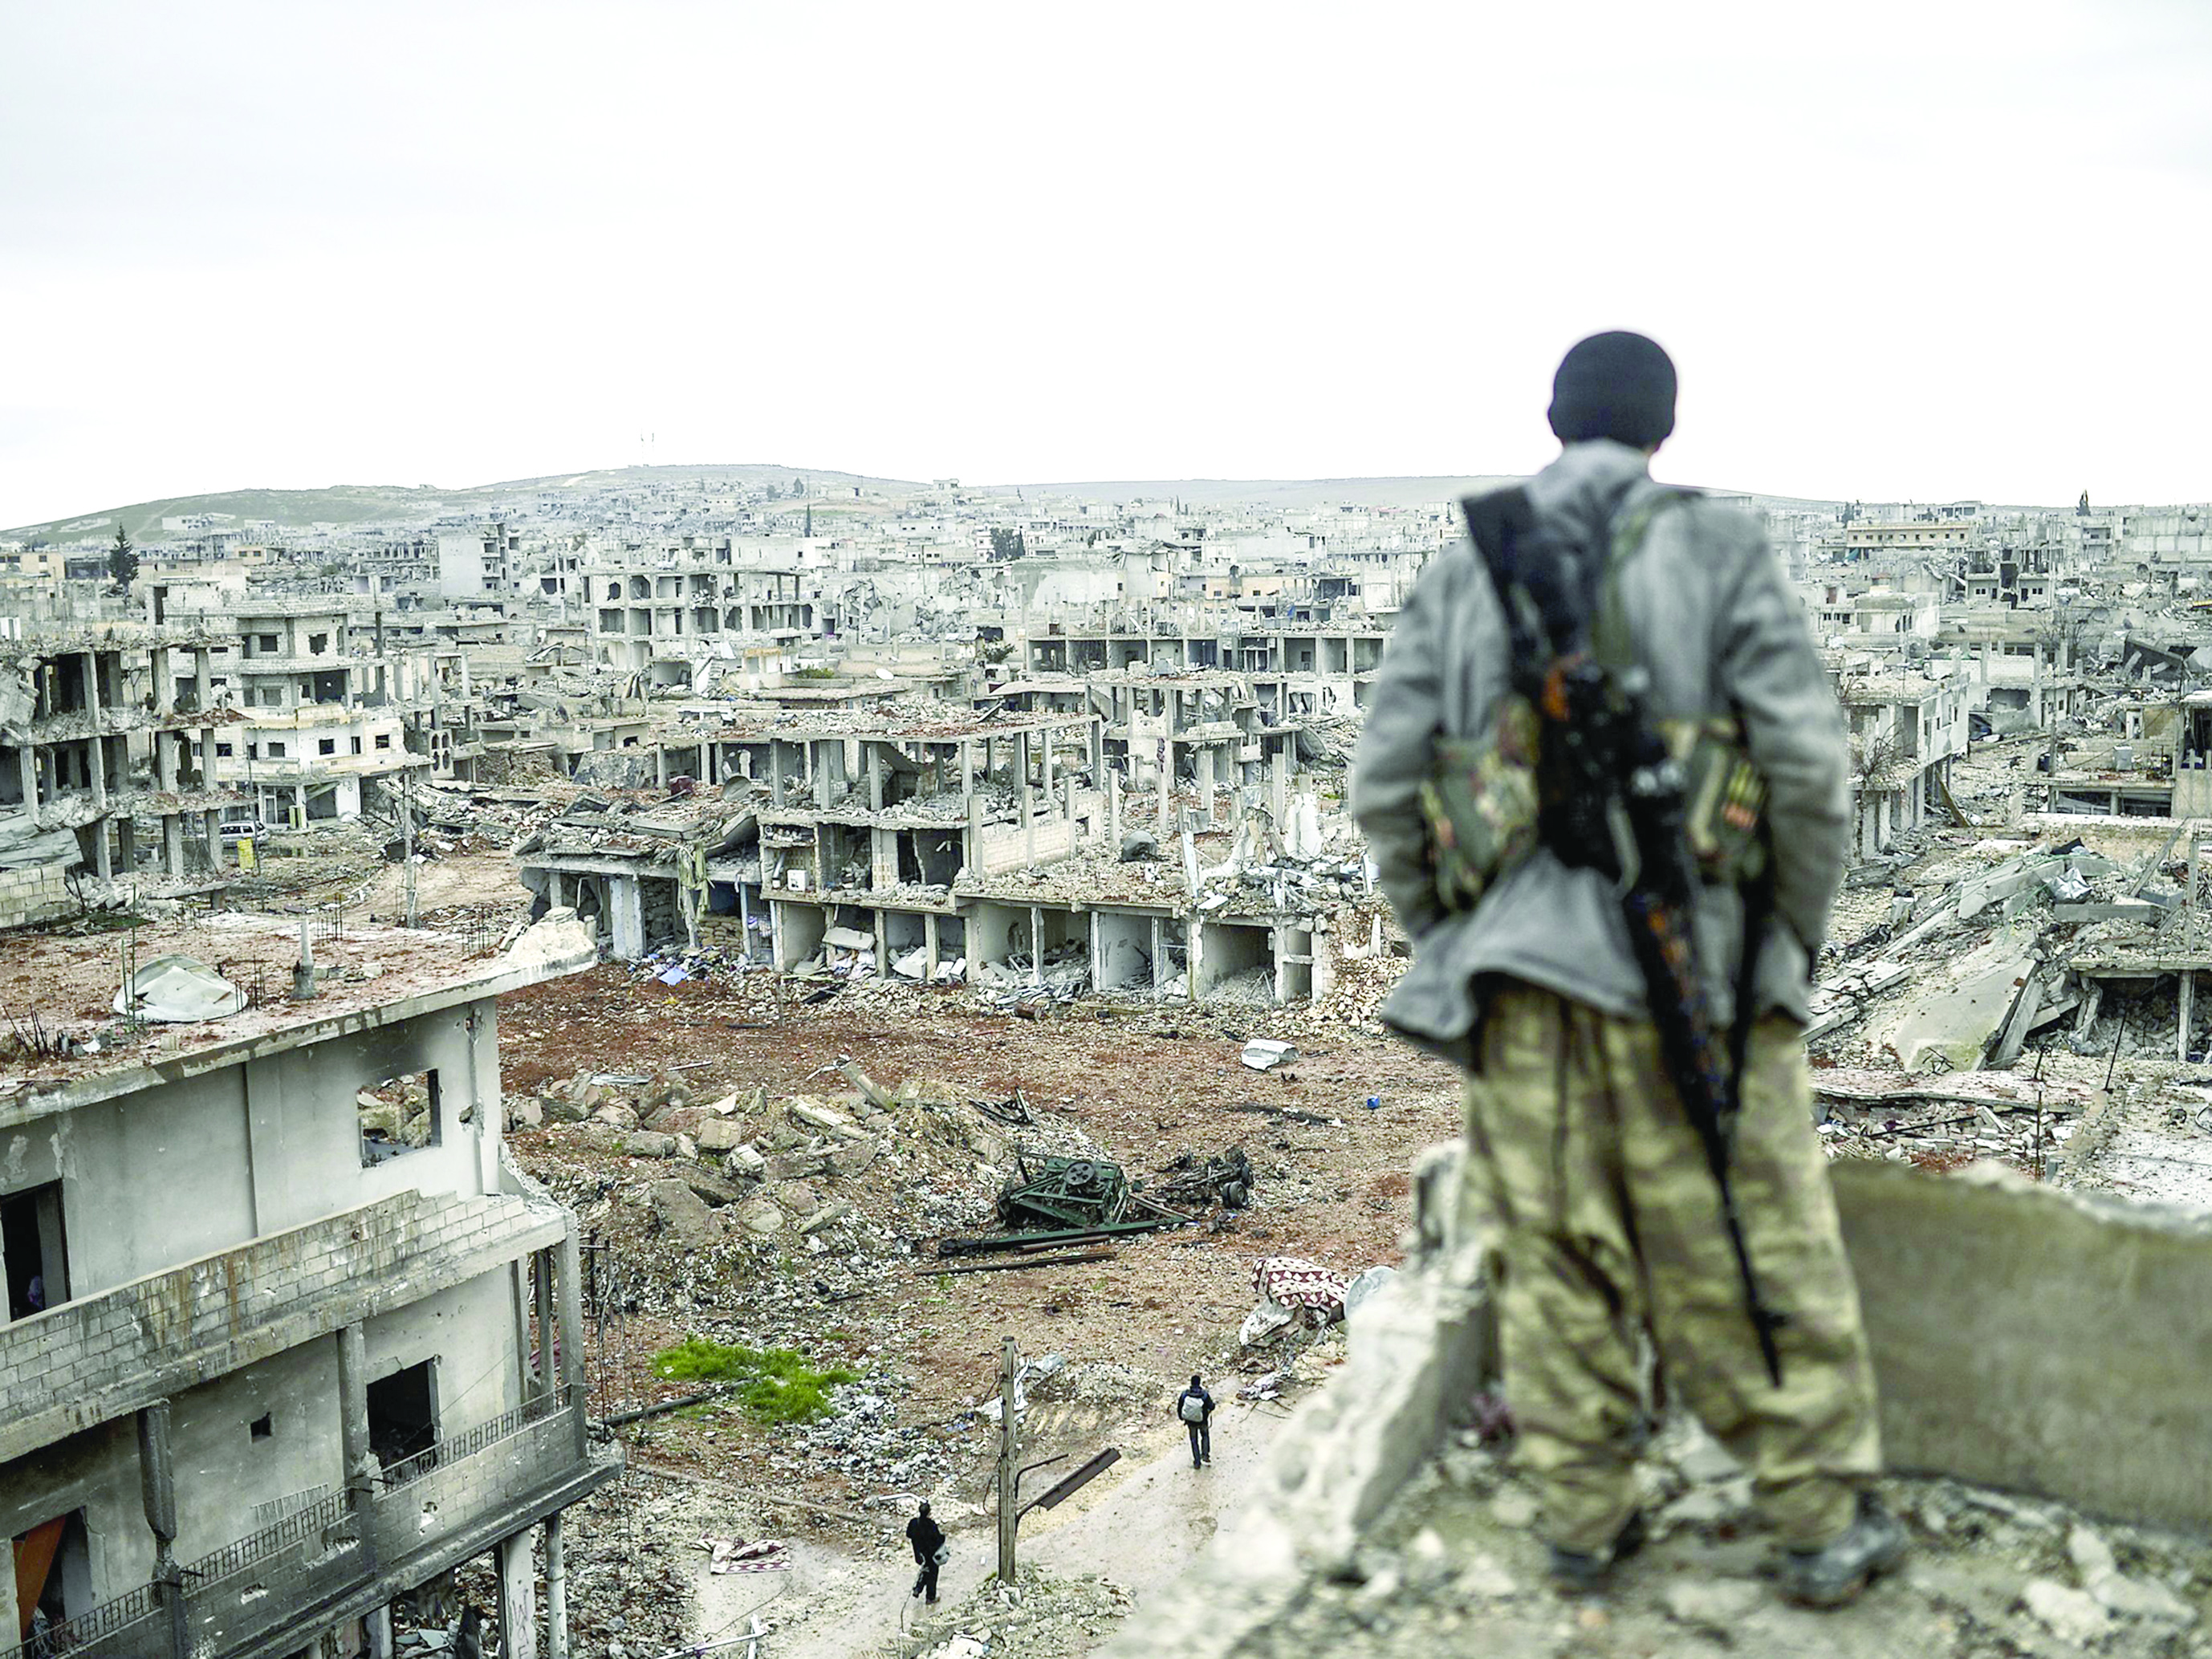 الشكوك تحيط بمؤتمر «سوتشي»

تنظمه روسيا لبحث السلام في سوريا